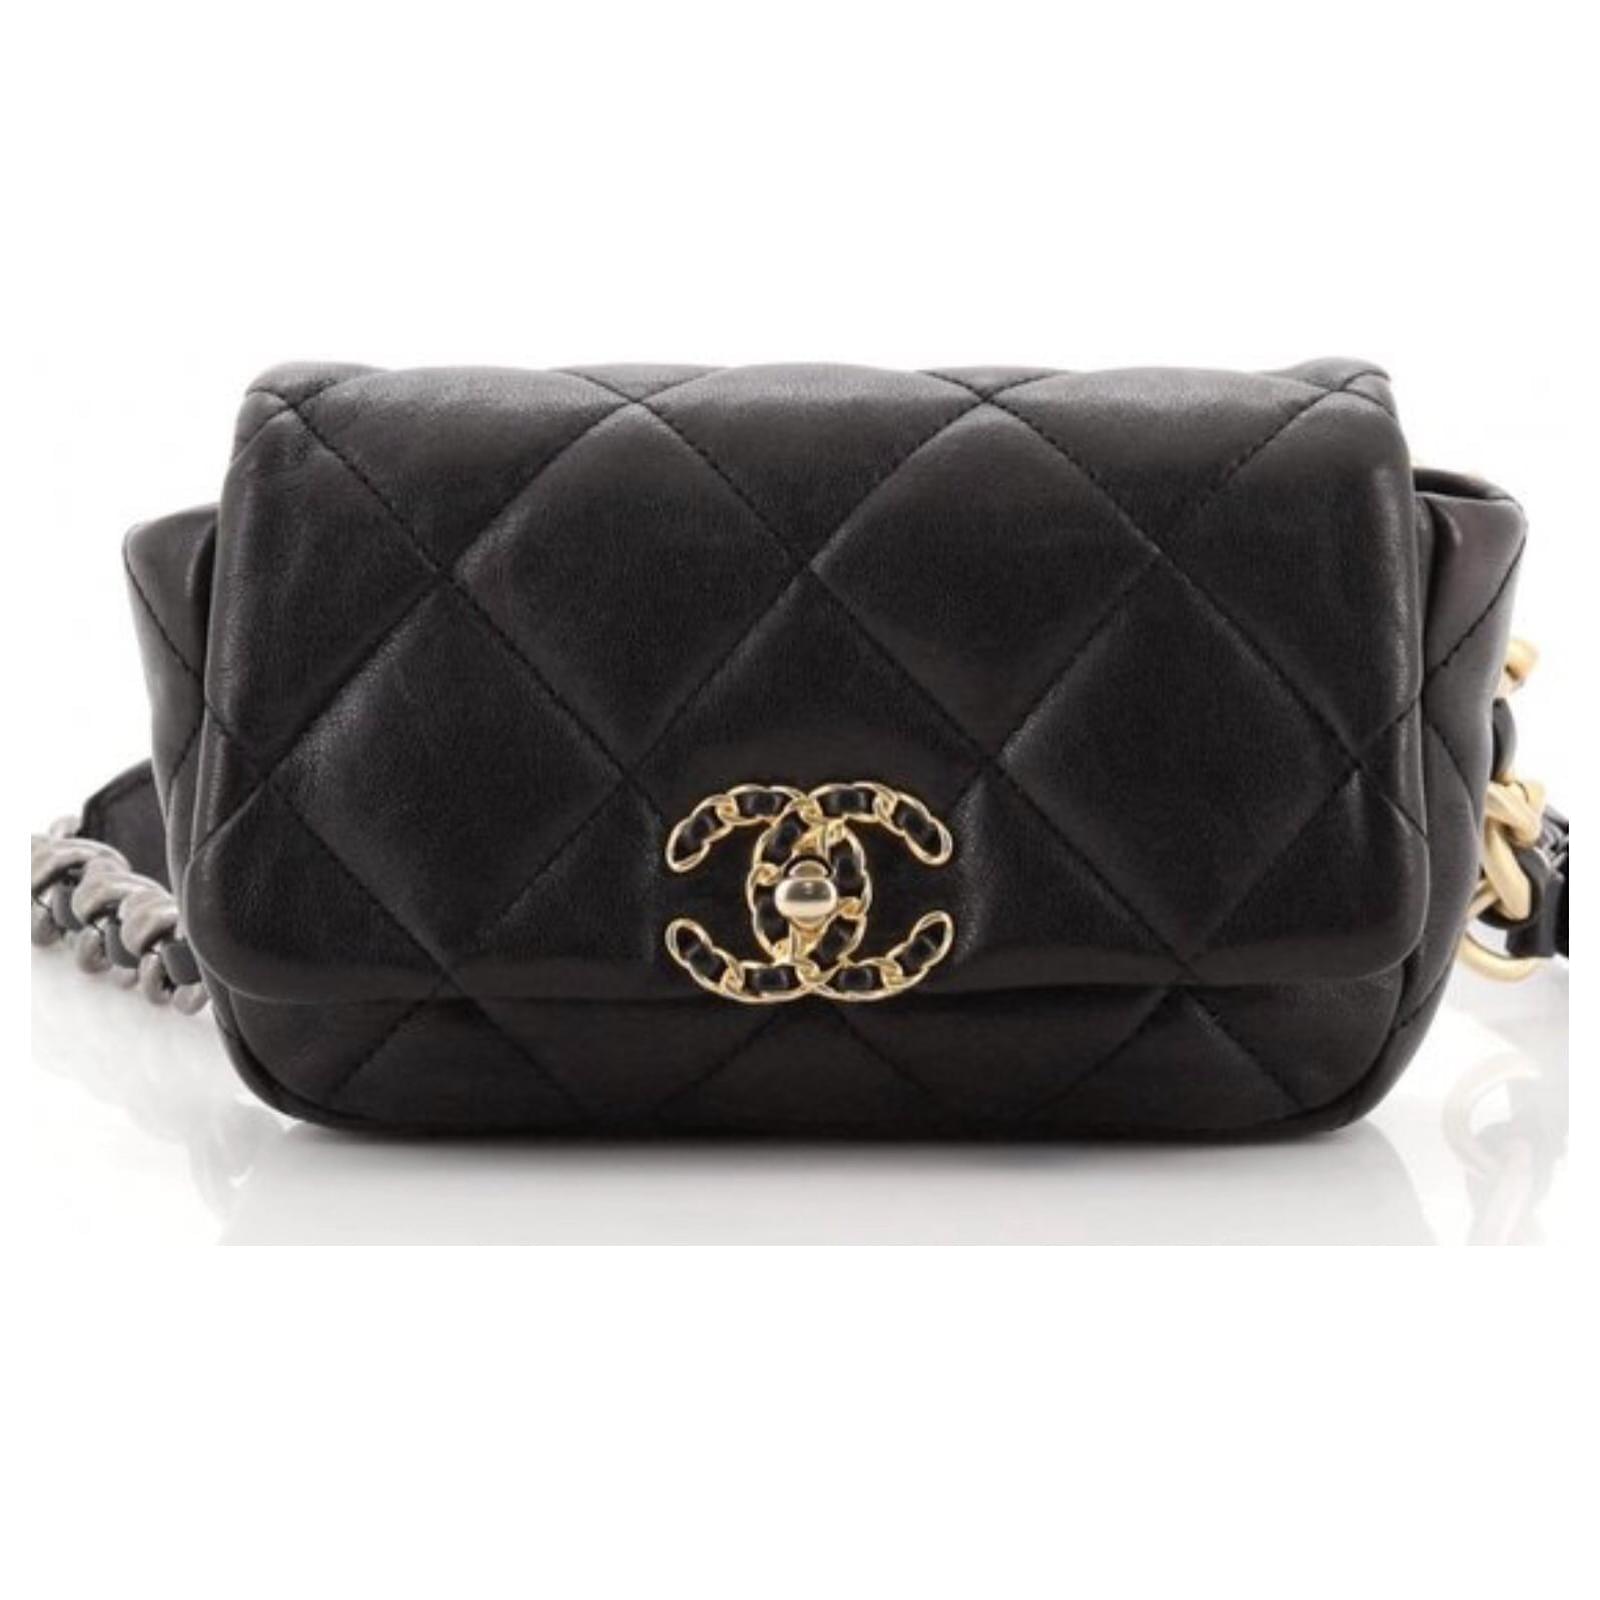 Chanel 19 Belt Bag